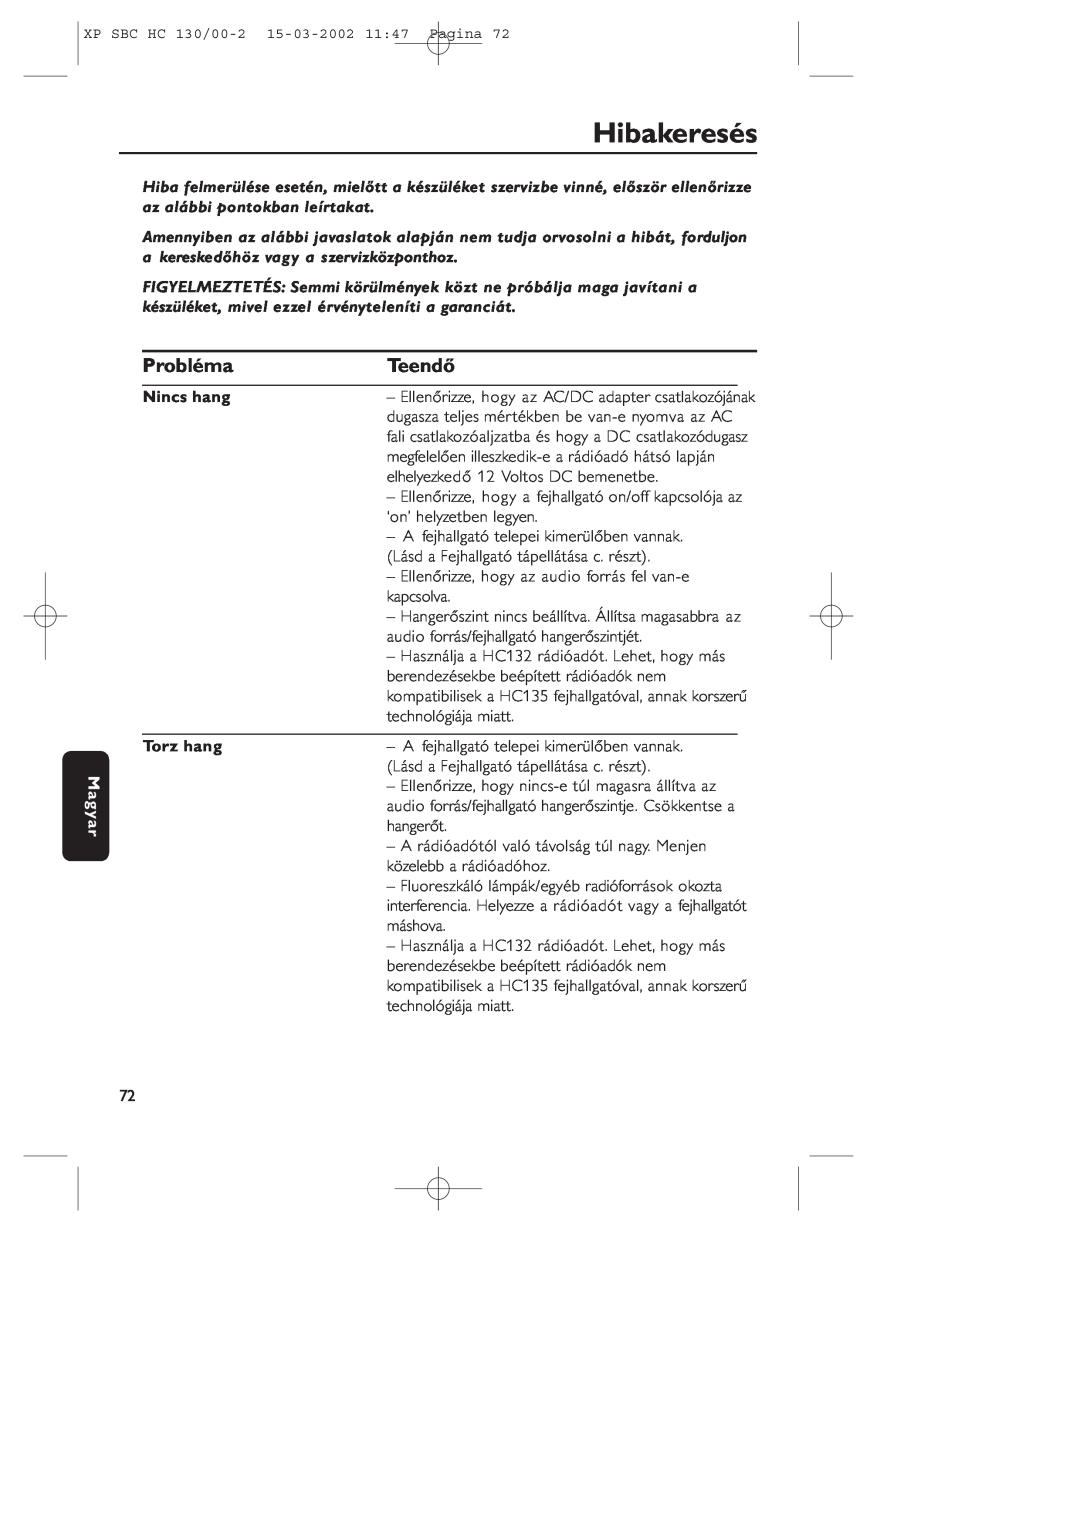 Philips SBC HC130 manual Hibakeresés, Probléma, Teendő, Magyar, Nincs hang, Torz hang 